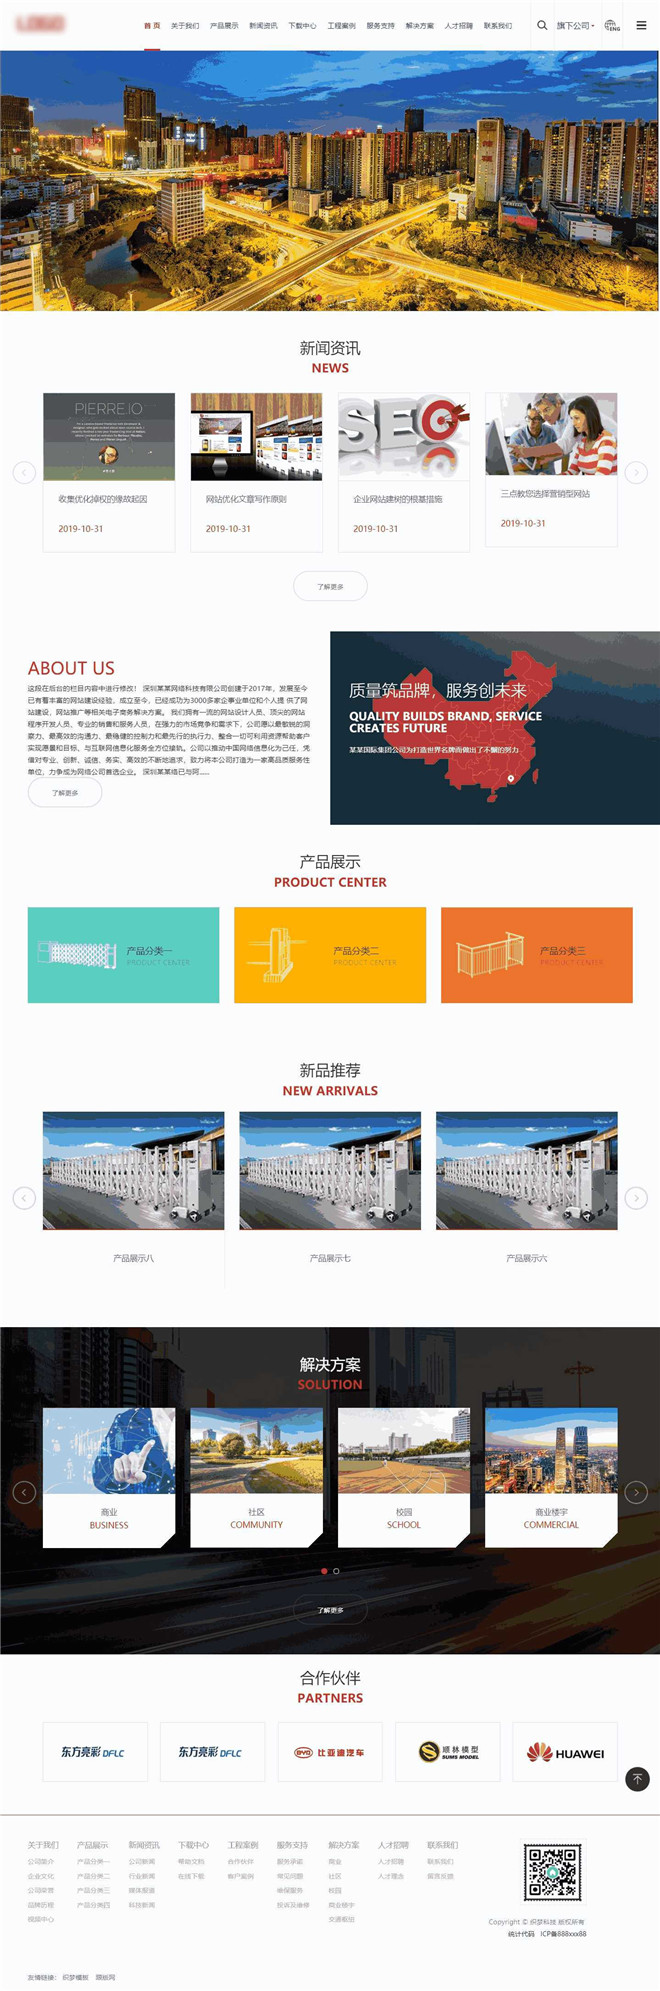 中英双语通用集团公司展示类企业网站模板截图